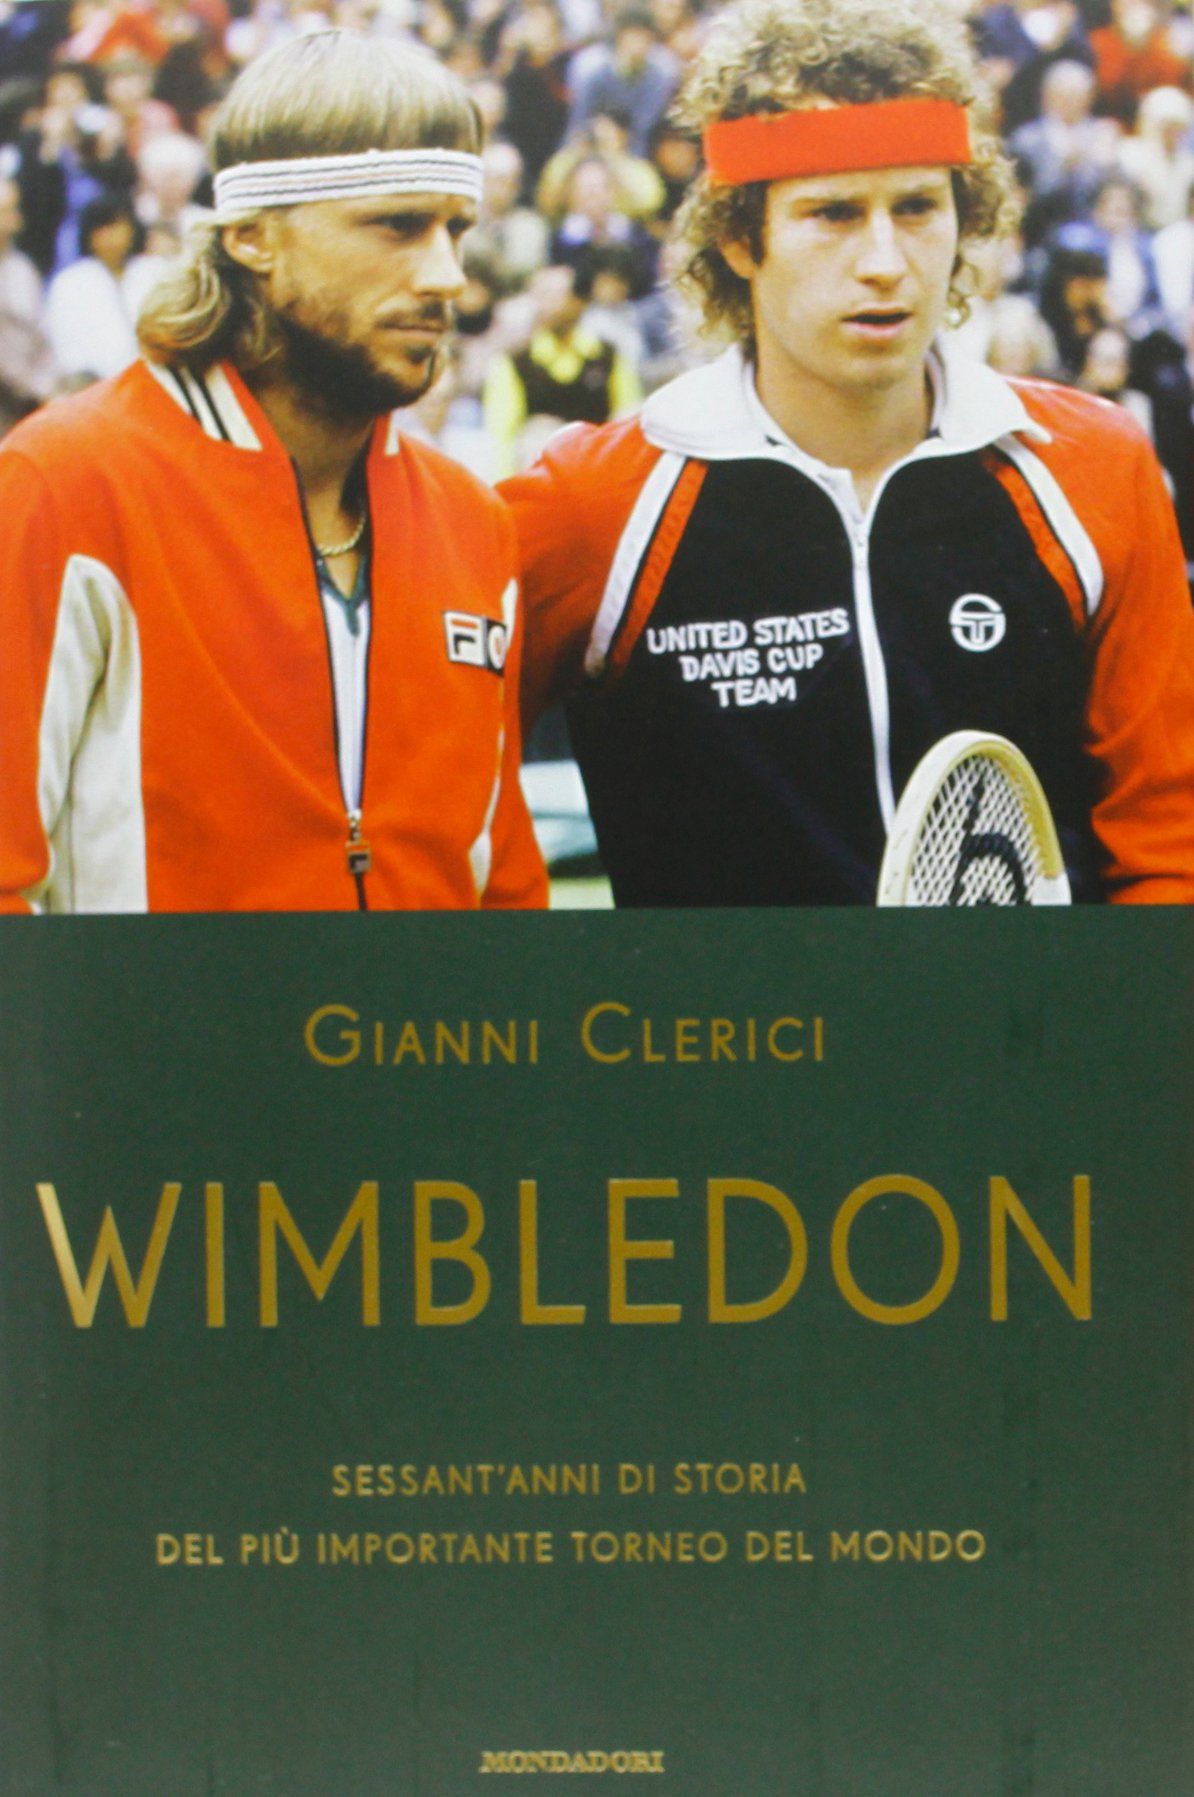 C’è “Wimbledon Sessant’anni di storia” di Gianni Clerici ma…